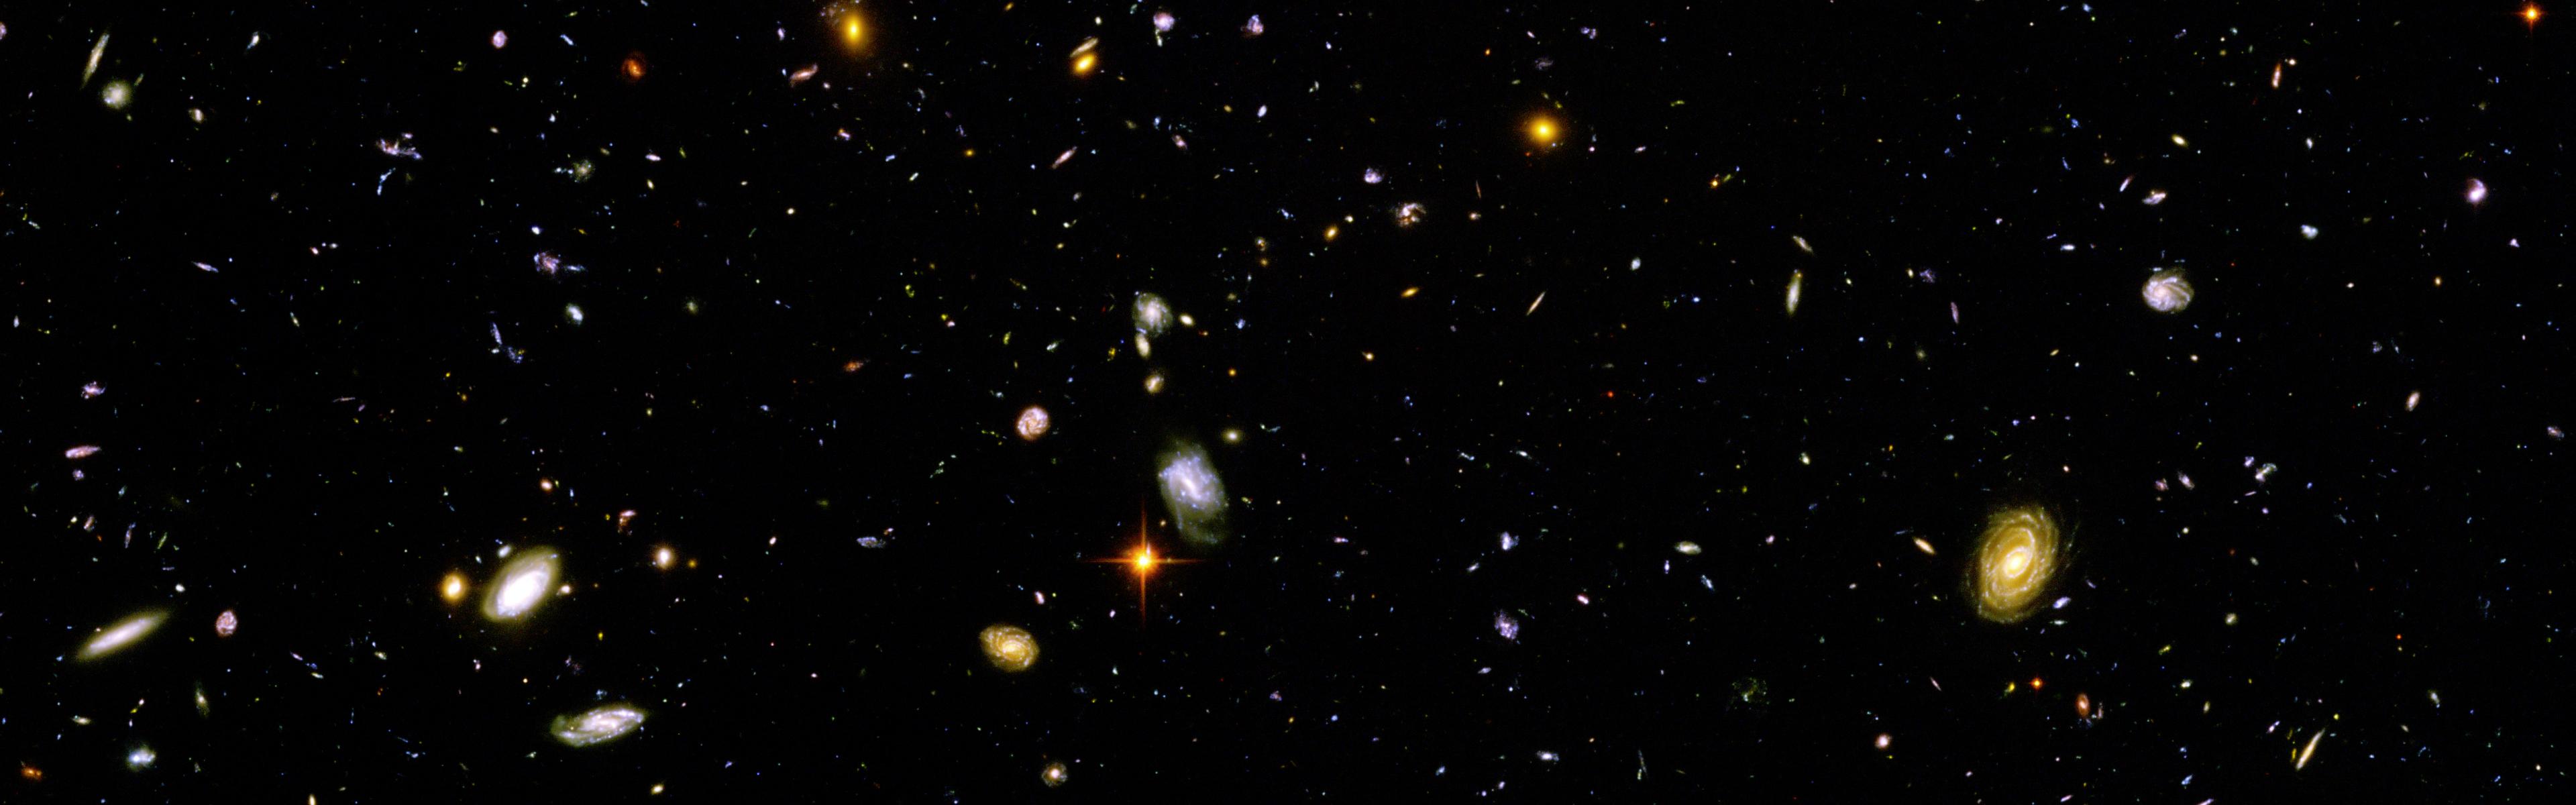 Hubble Ultra Deep Field HD Picture Wallpaperiz